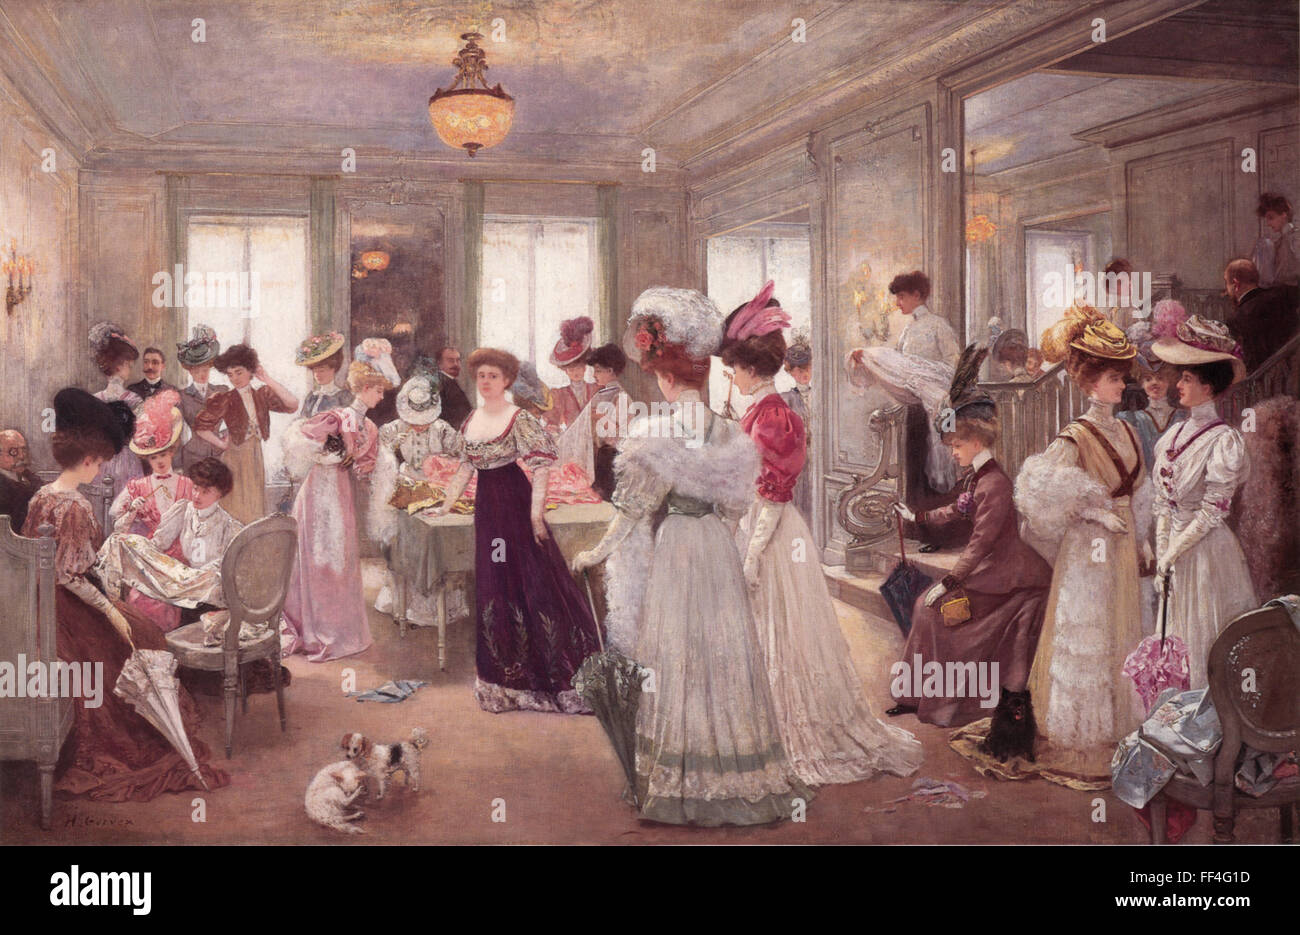 JEANNE PAQUIN (1869-1935), couturier français. Une peinture de 1906 par Henri Gervex intitulé 'cinq heures à Paquin'. Paquin elle-même est dans le centre de robe sombre. Banque D'Images